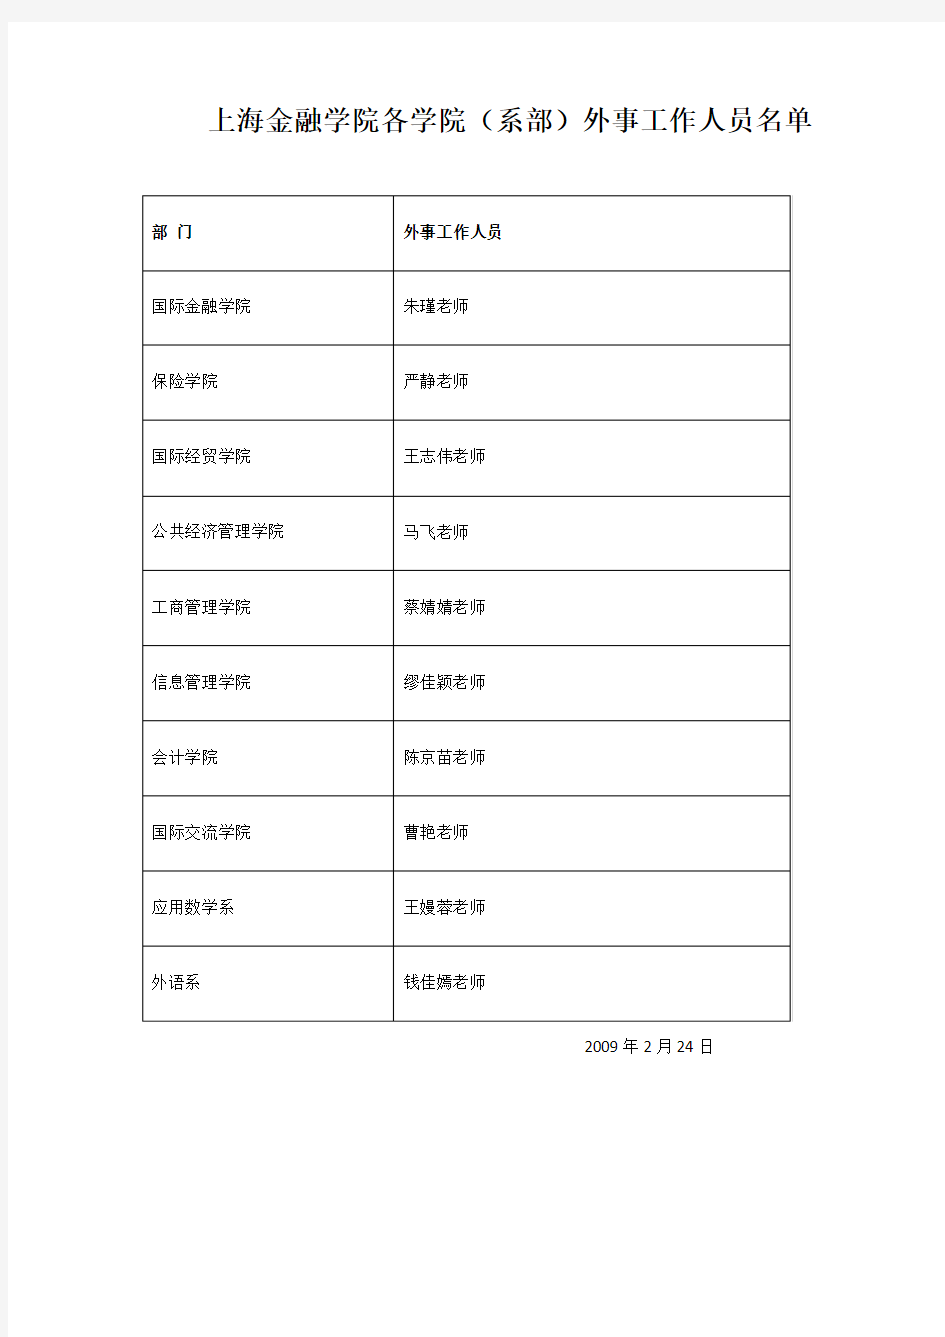 上海金融学院各学院(系部)外事工作人员名单